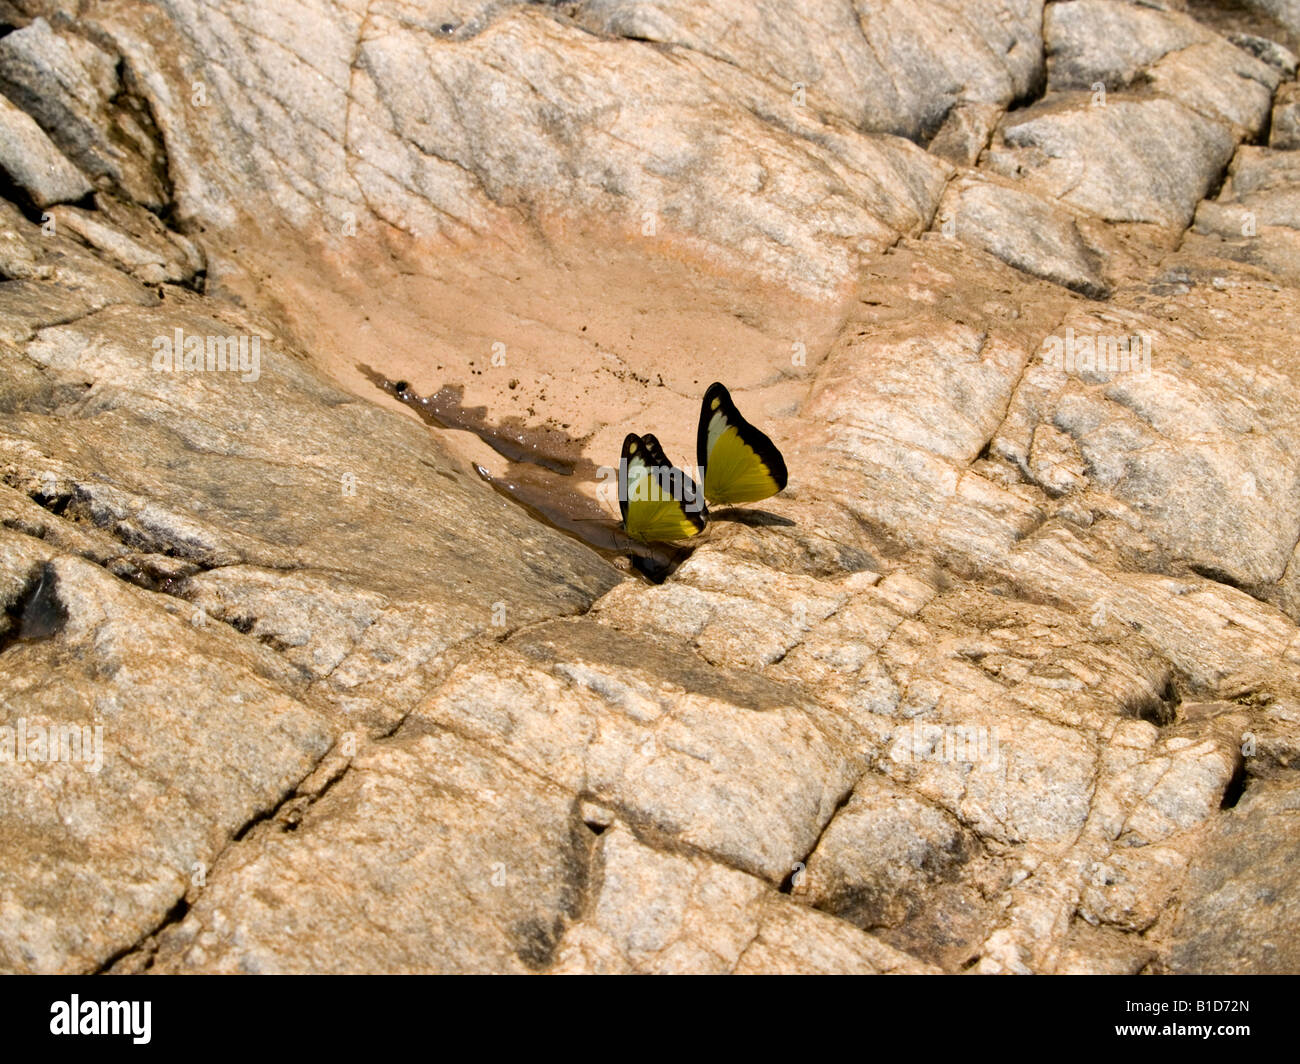 Duo de mariposas, tomando sol Foto de stock